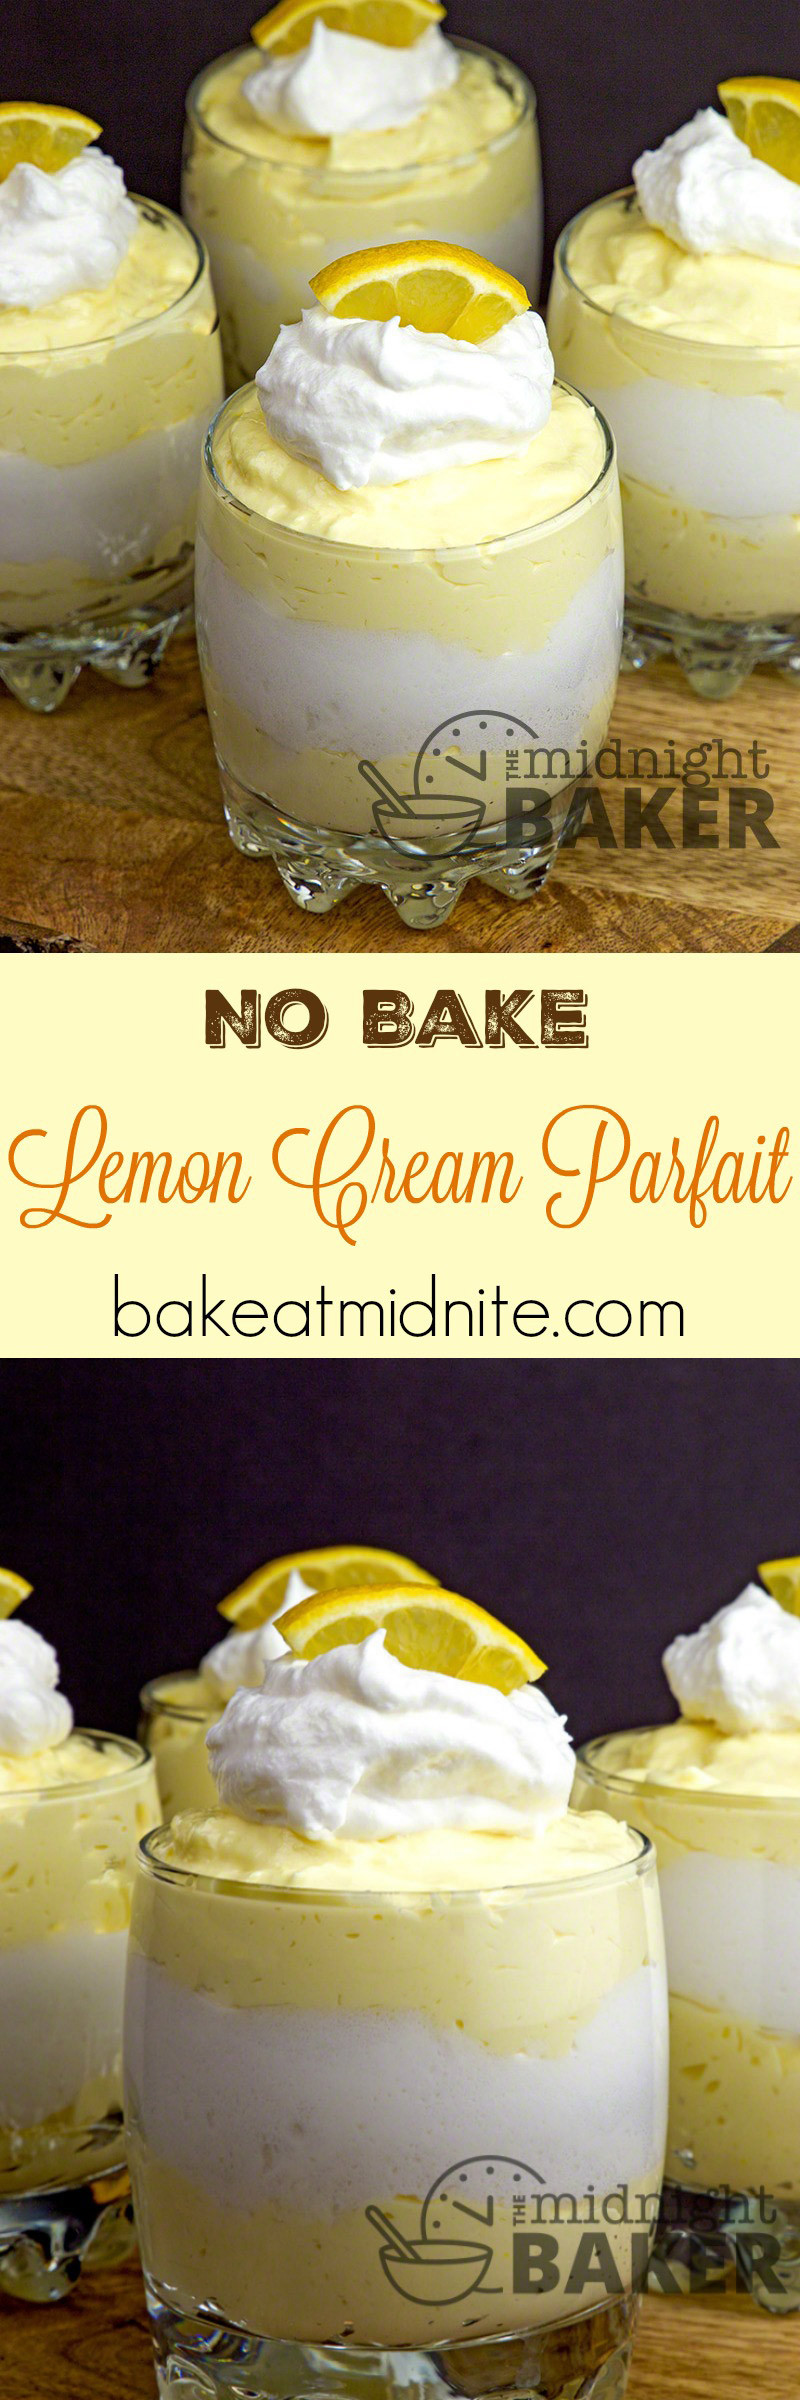 Lemon Dessert Recipe
 Lemon Cream Parfait The Midnight Baker